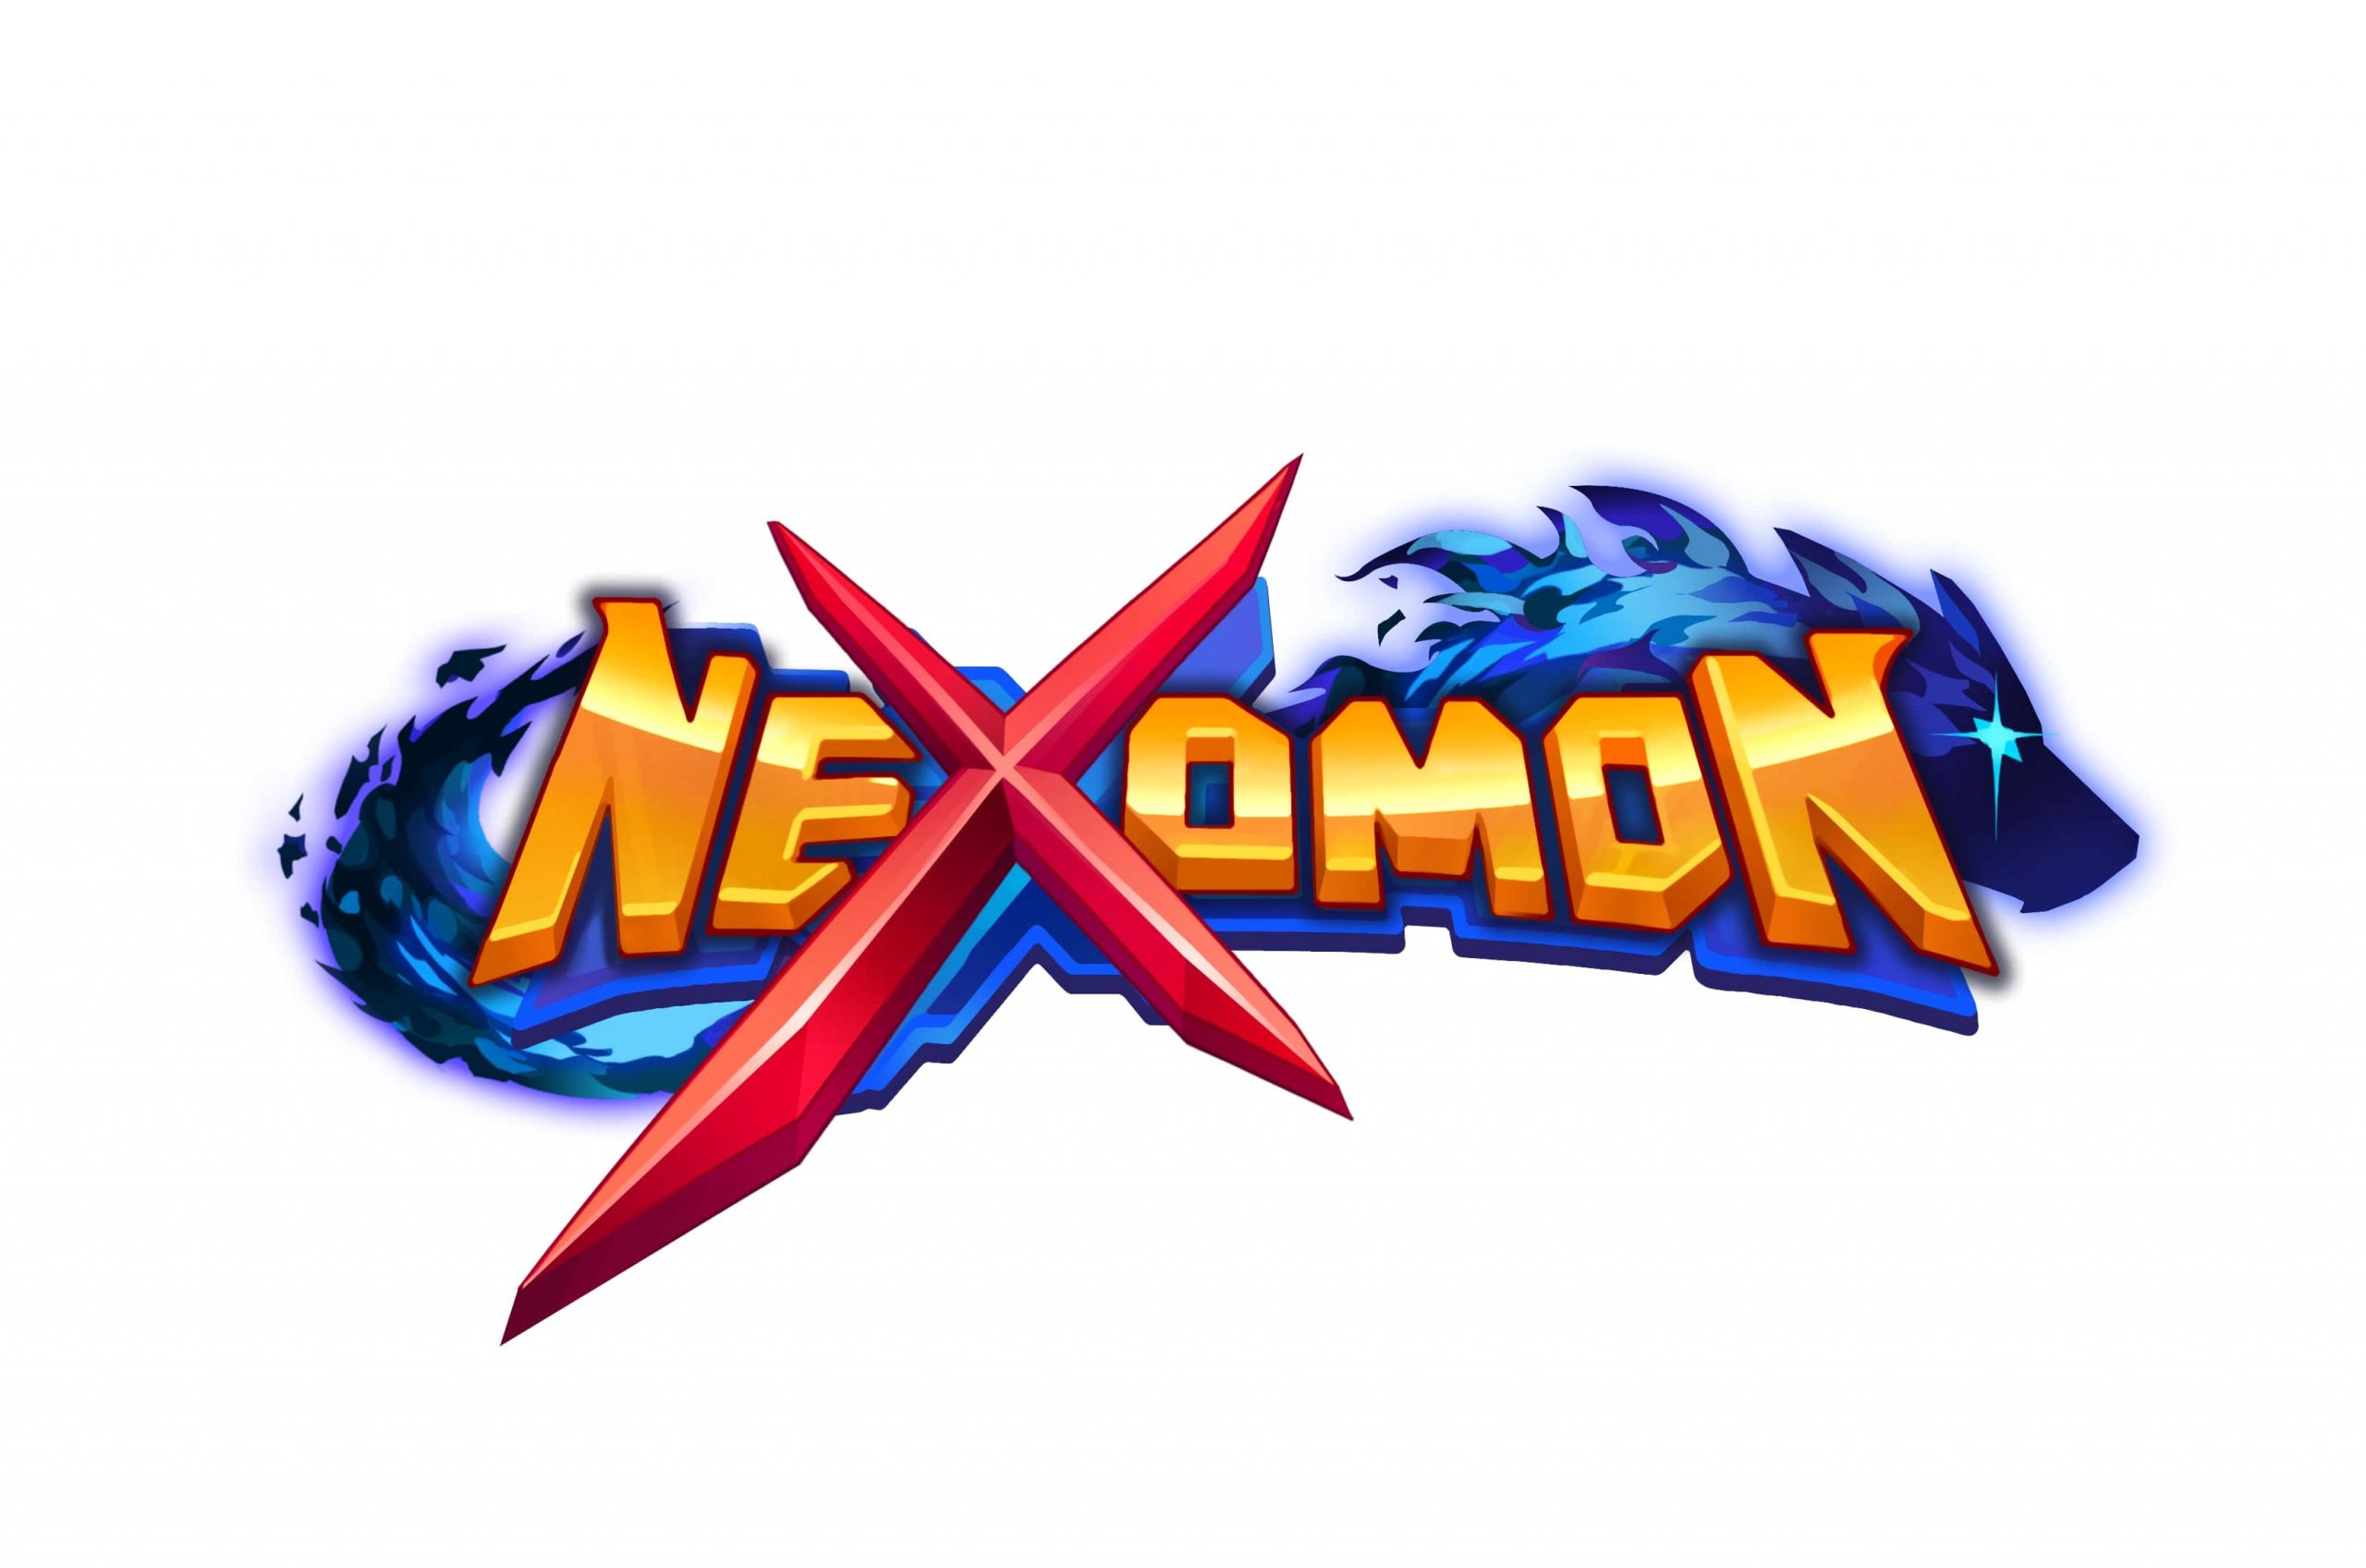 De originele Nexomon komt op 17 september naar de consoles